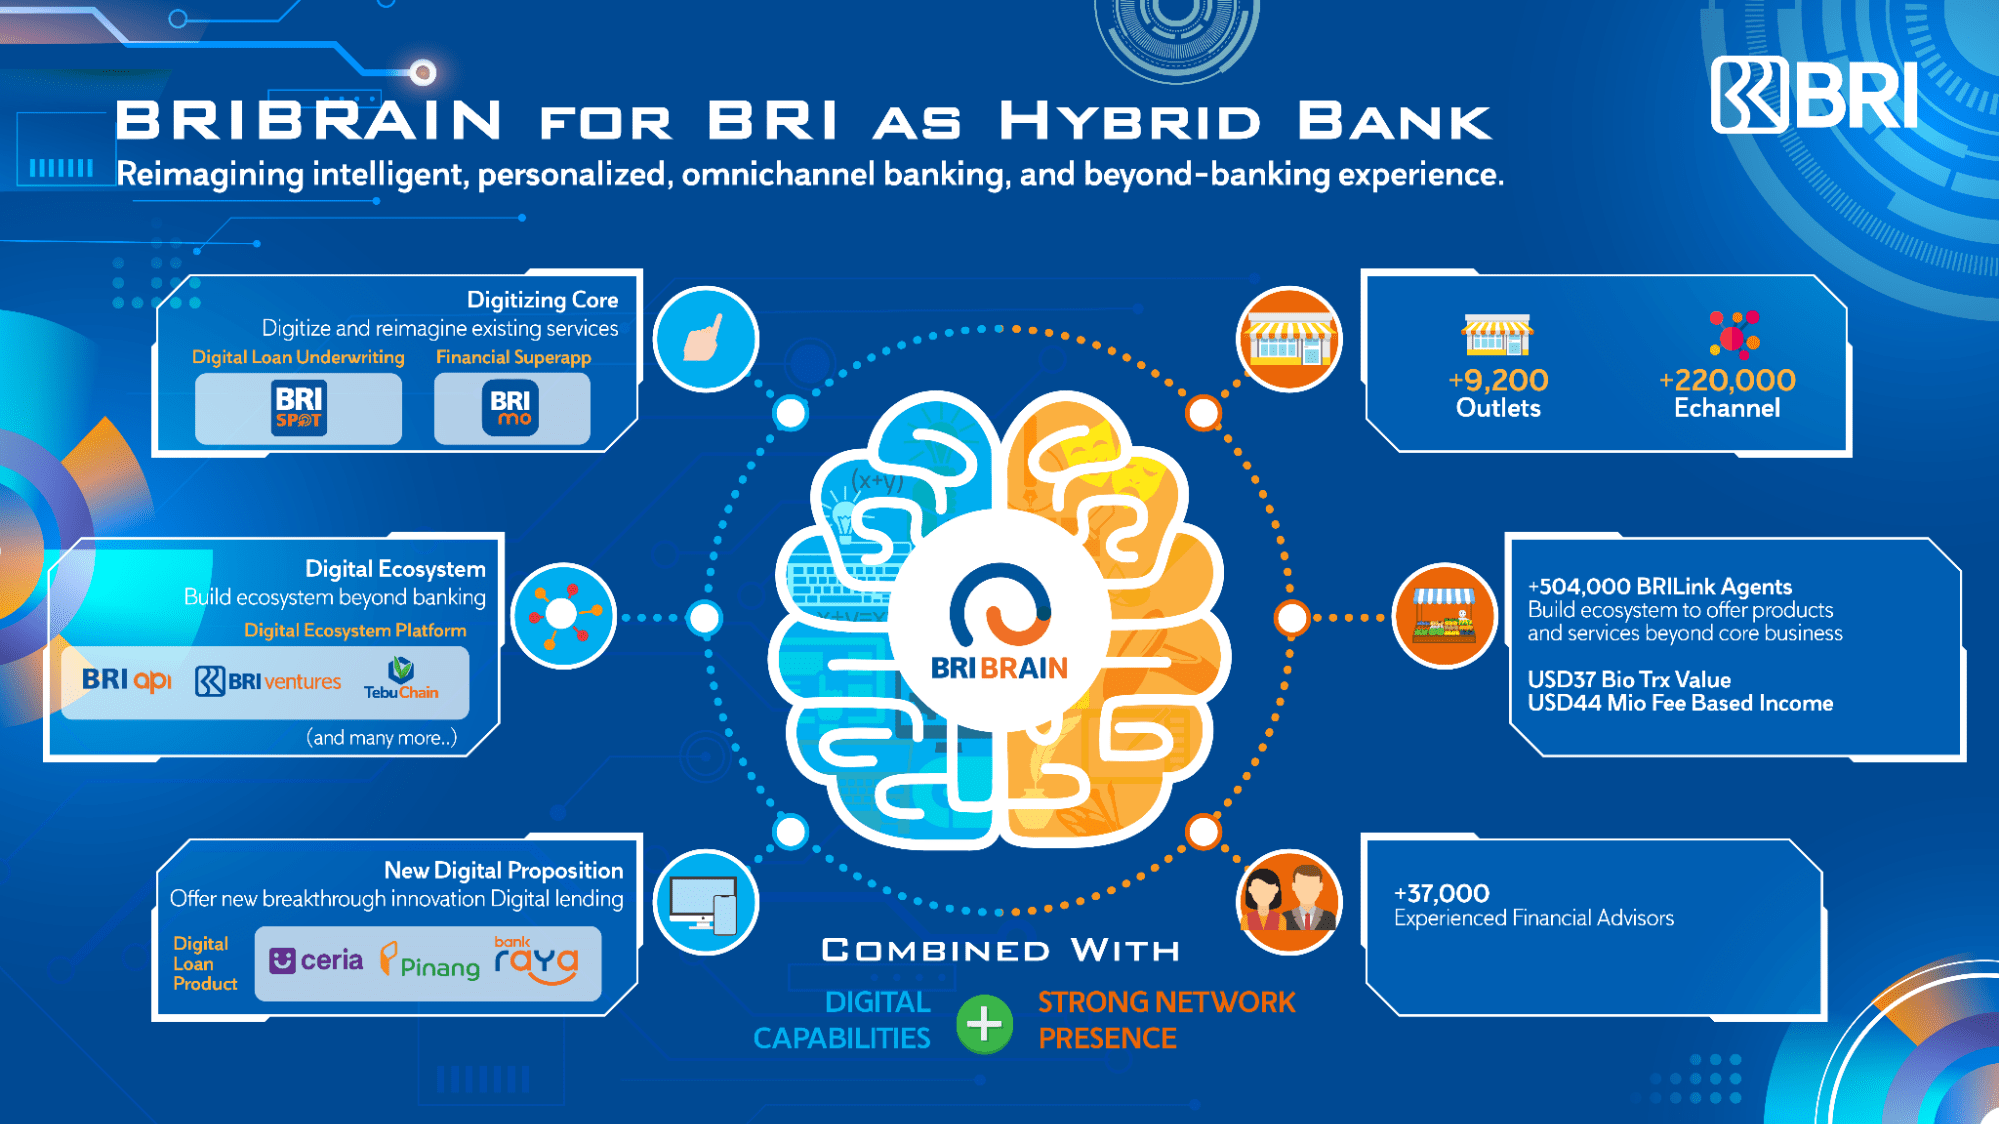 BRIBRAIN berperan sebagai pusat otak BRI untuk menjadi Hybrid Bank, menyatukan kekuatan kapabilitas digital dengan jaringan fisik BRI di seluruh Indonesia